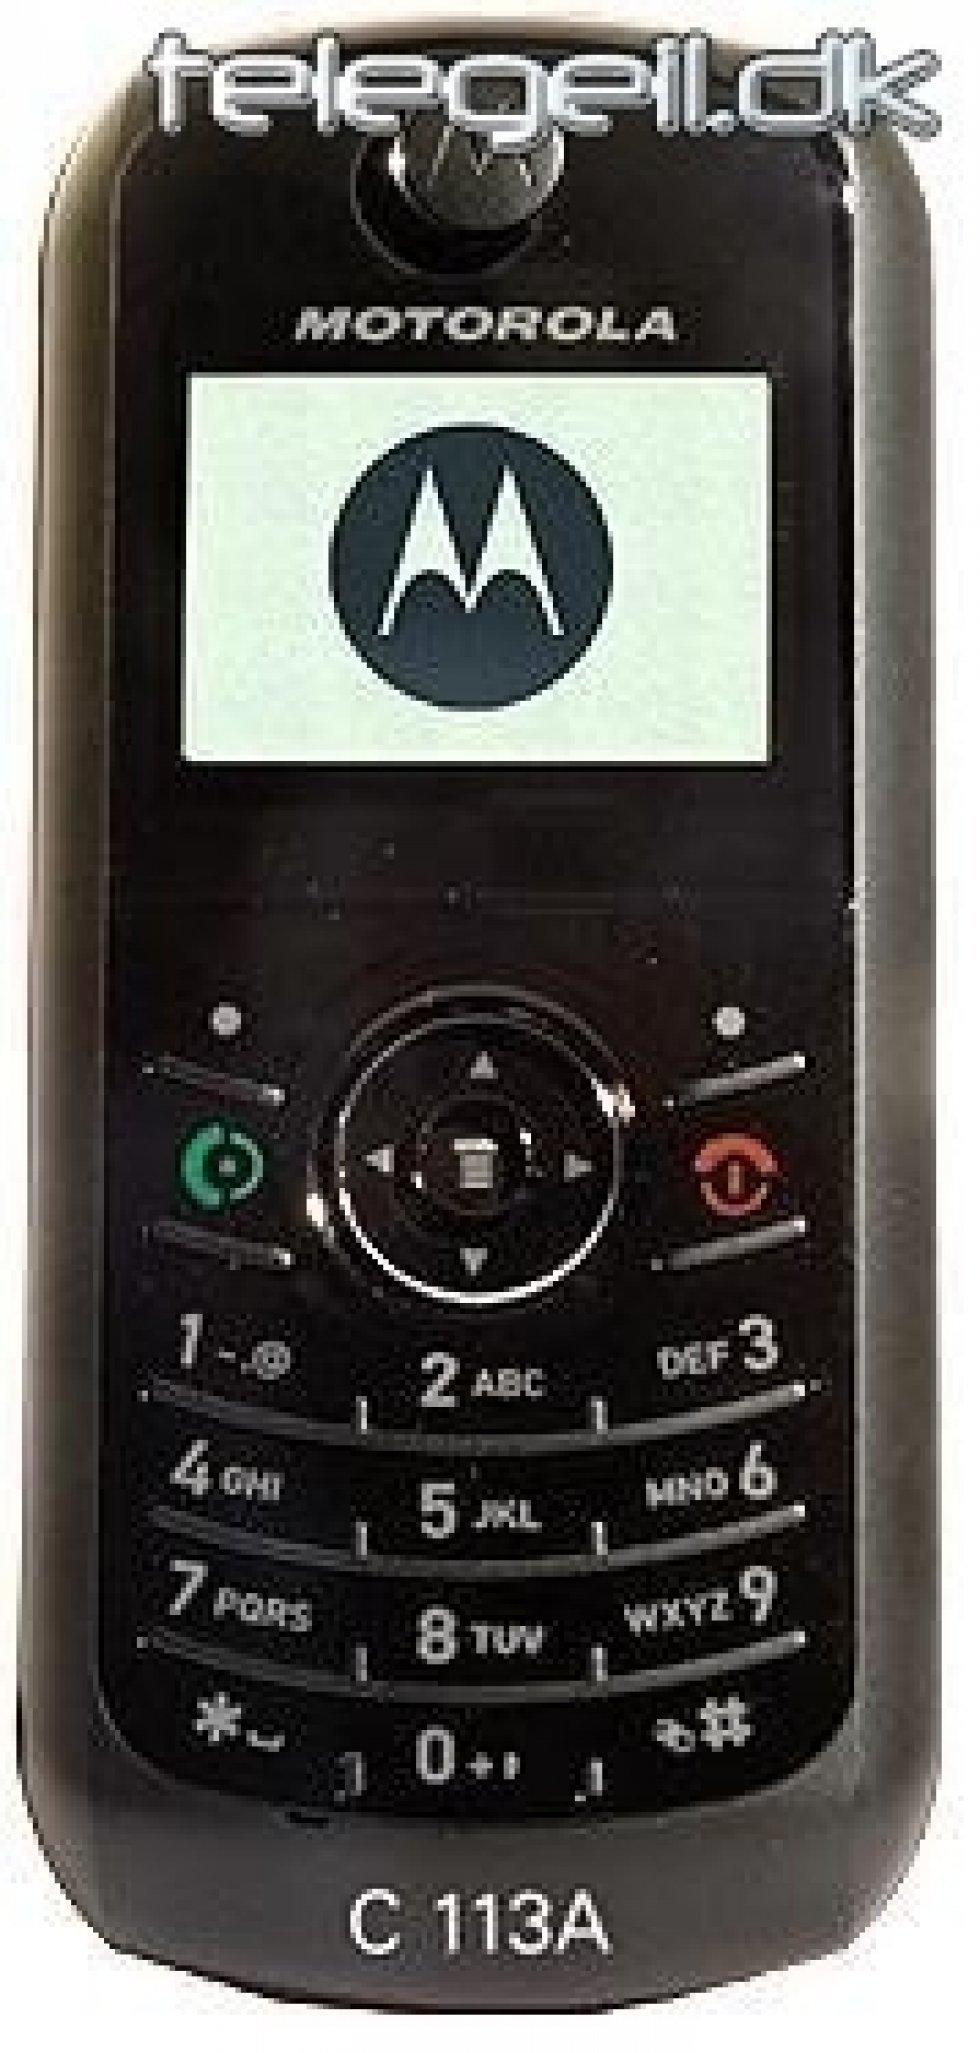 Lavpristelefon fra Motorola